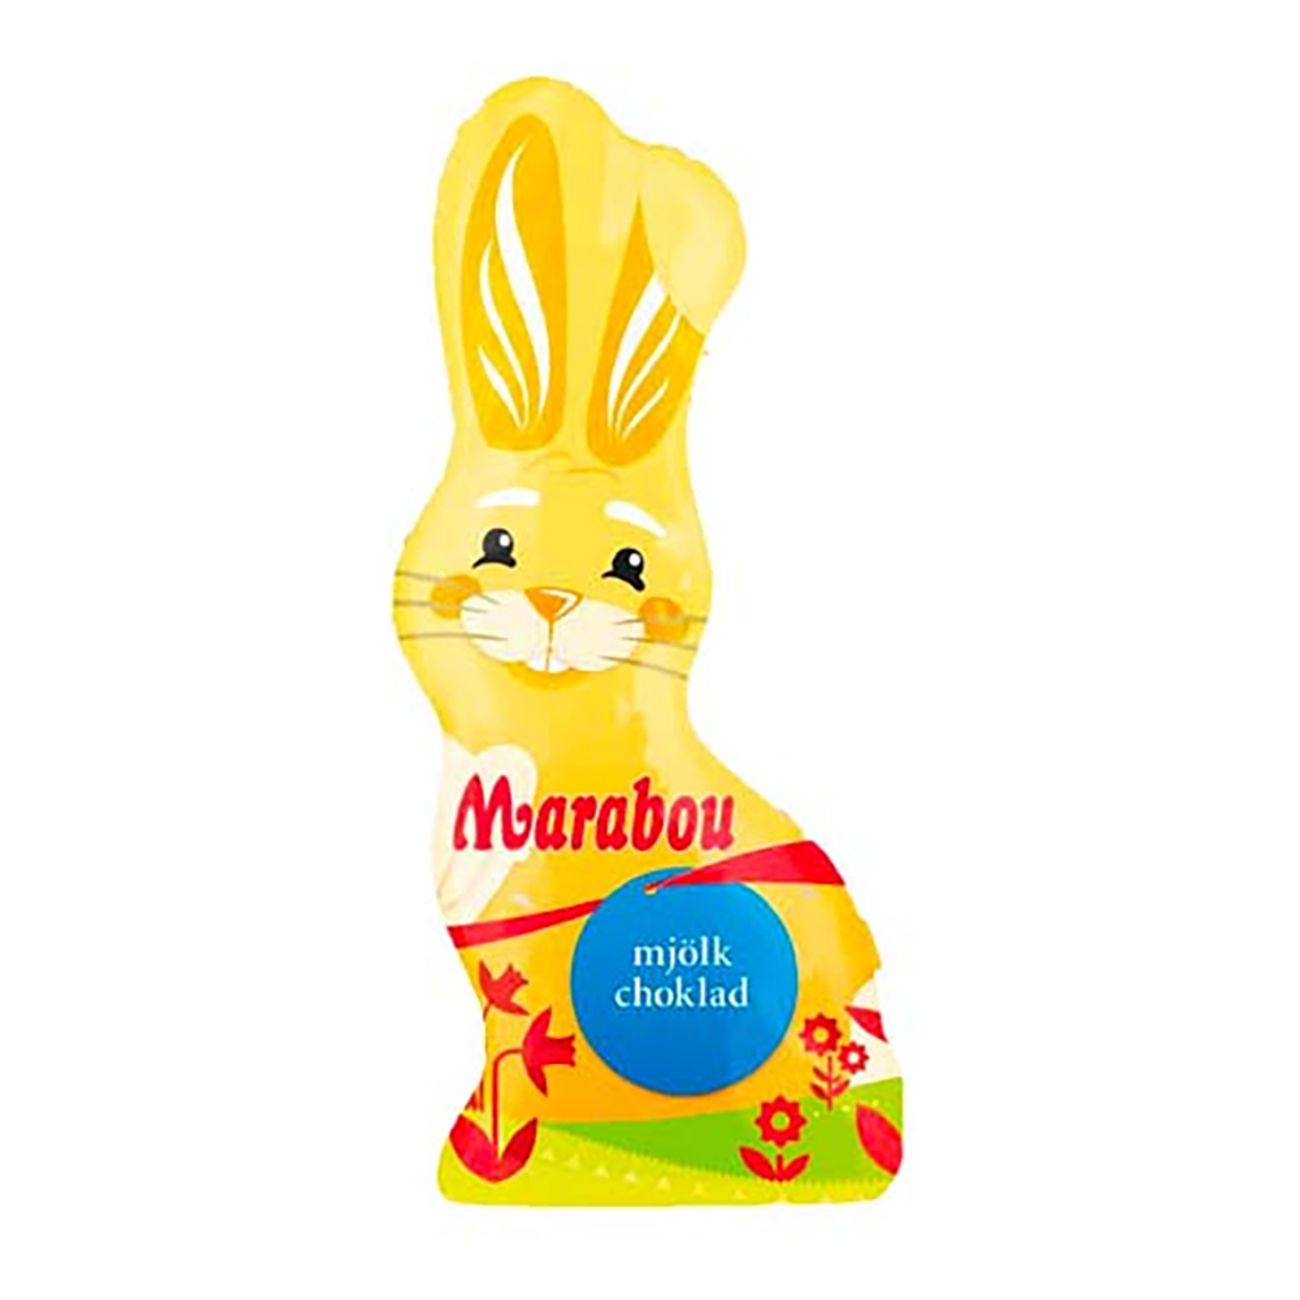 Marabou Påskhare i choklad • Pryloteket